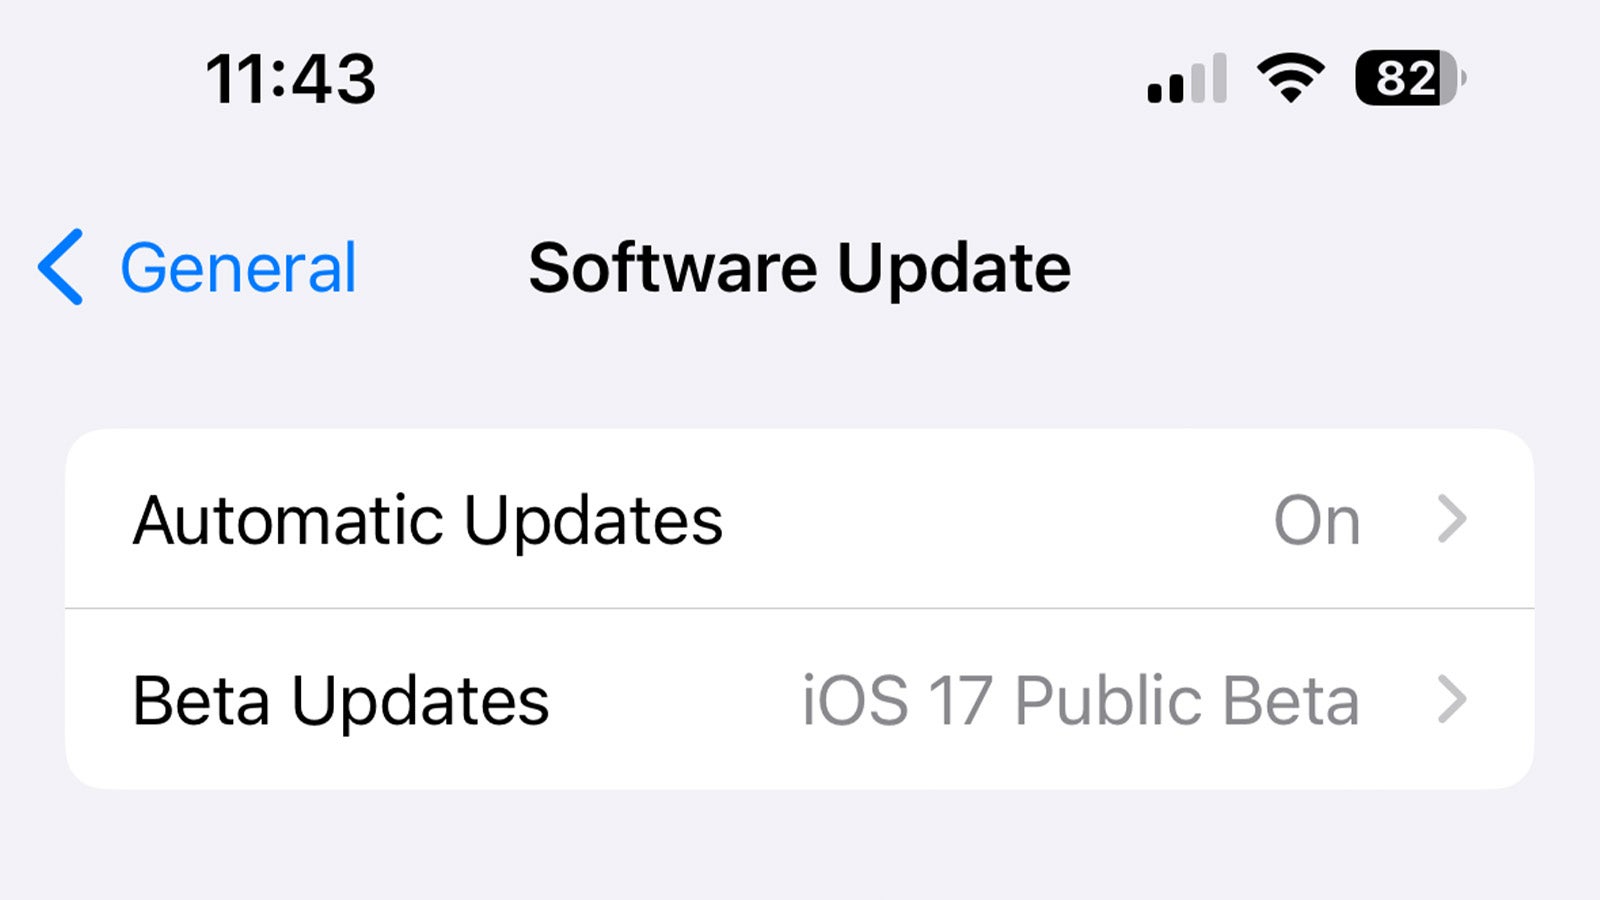 Software update menu in iOS 17